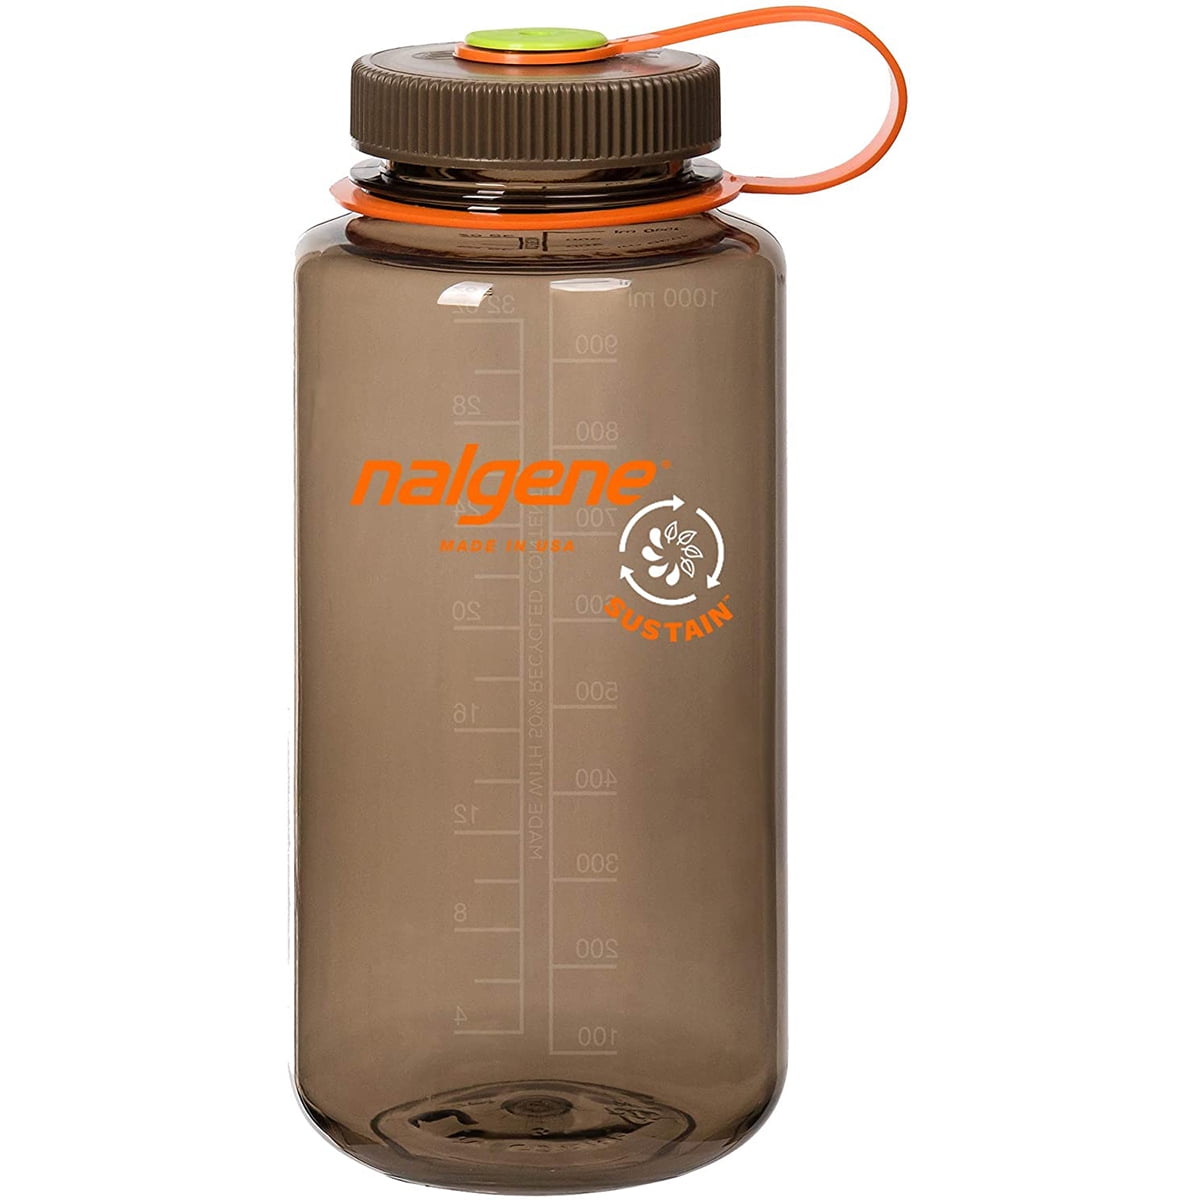 The Outset Nalgene Water Bottle